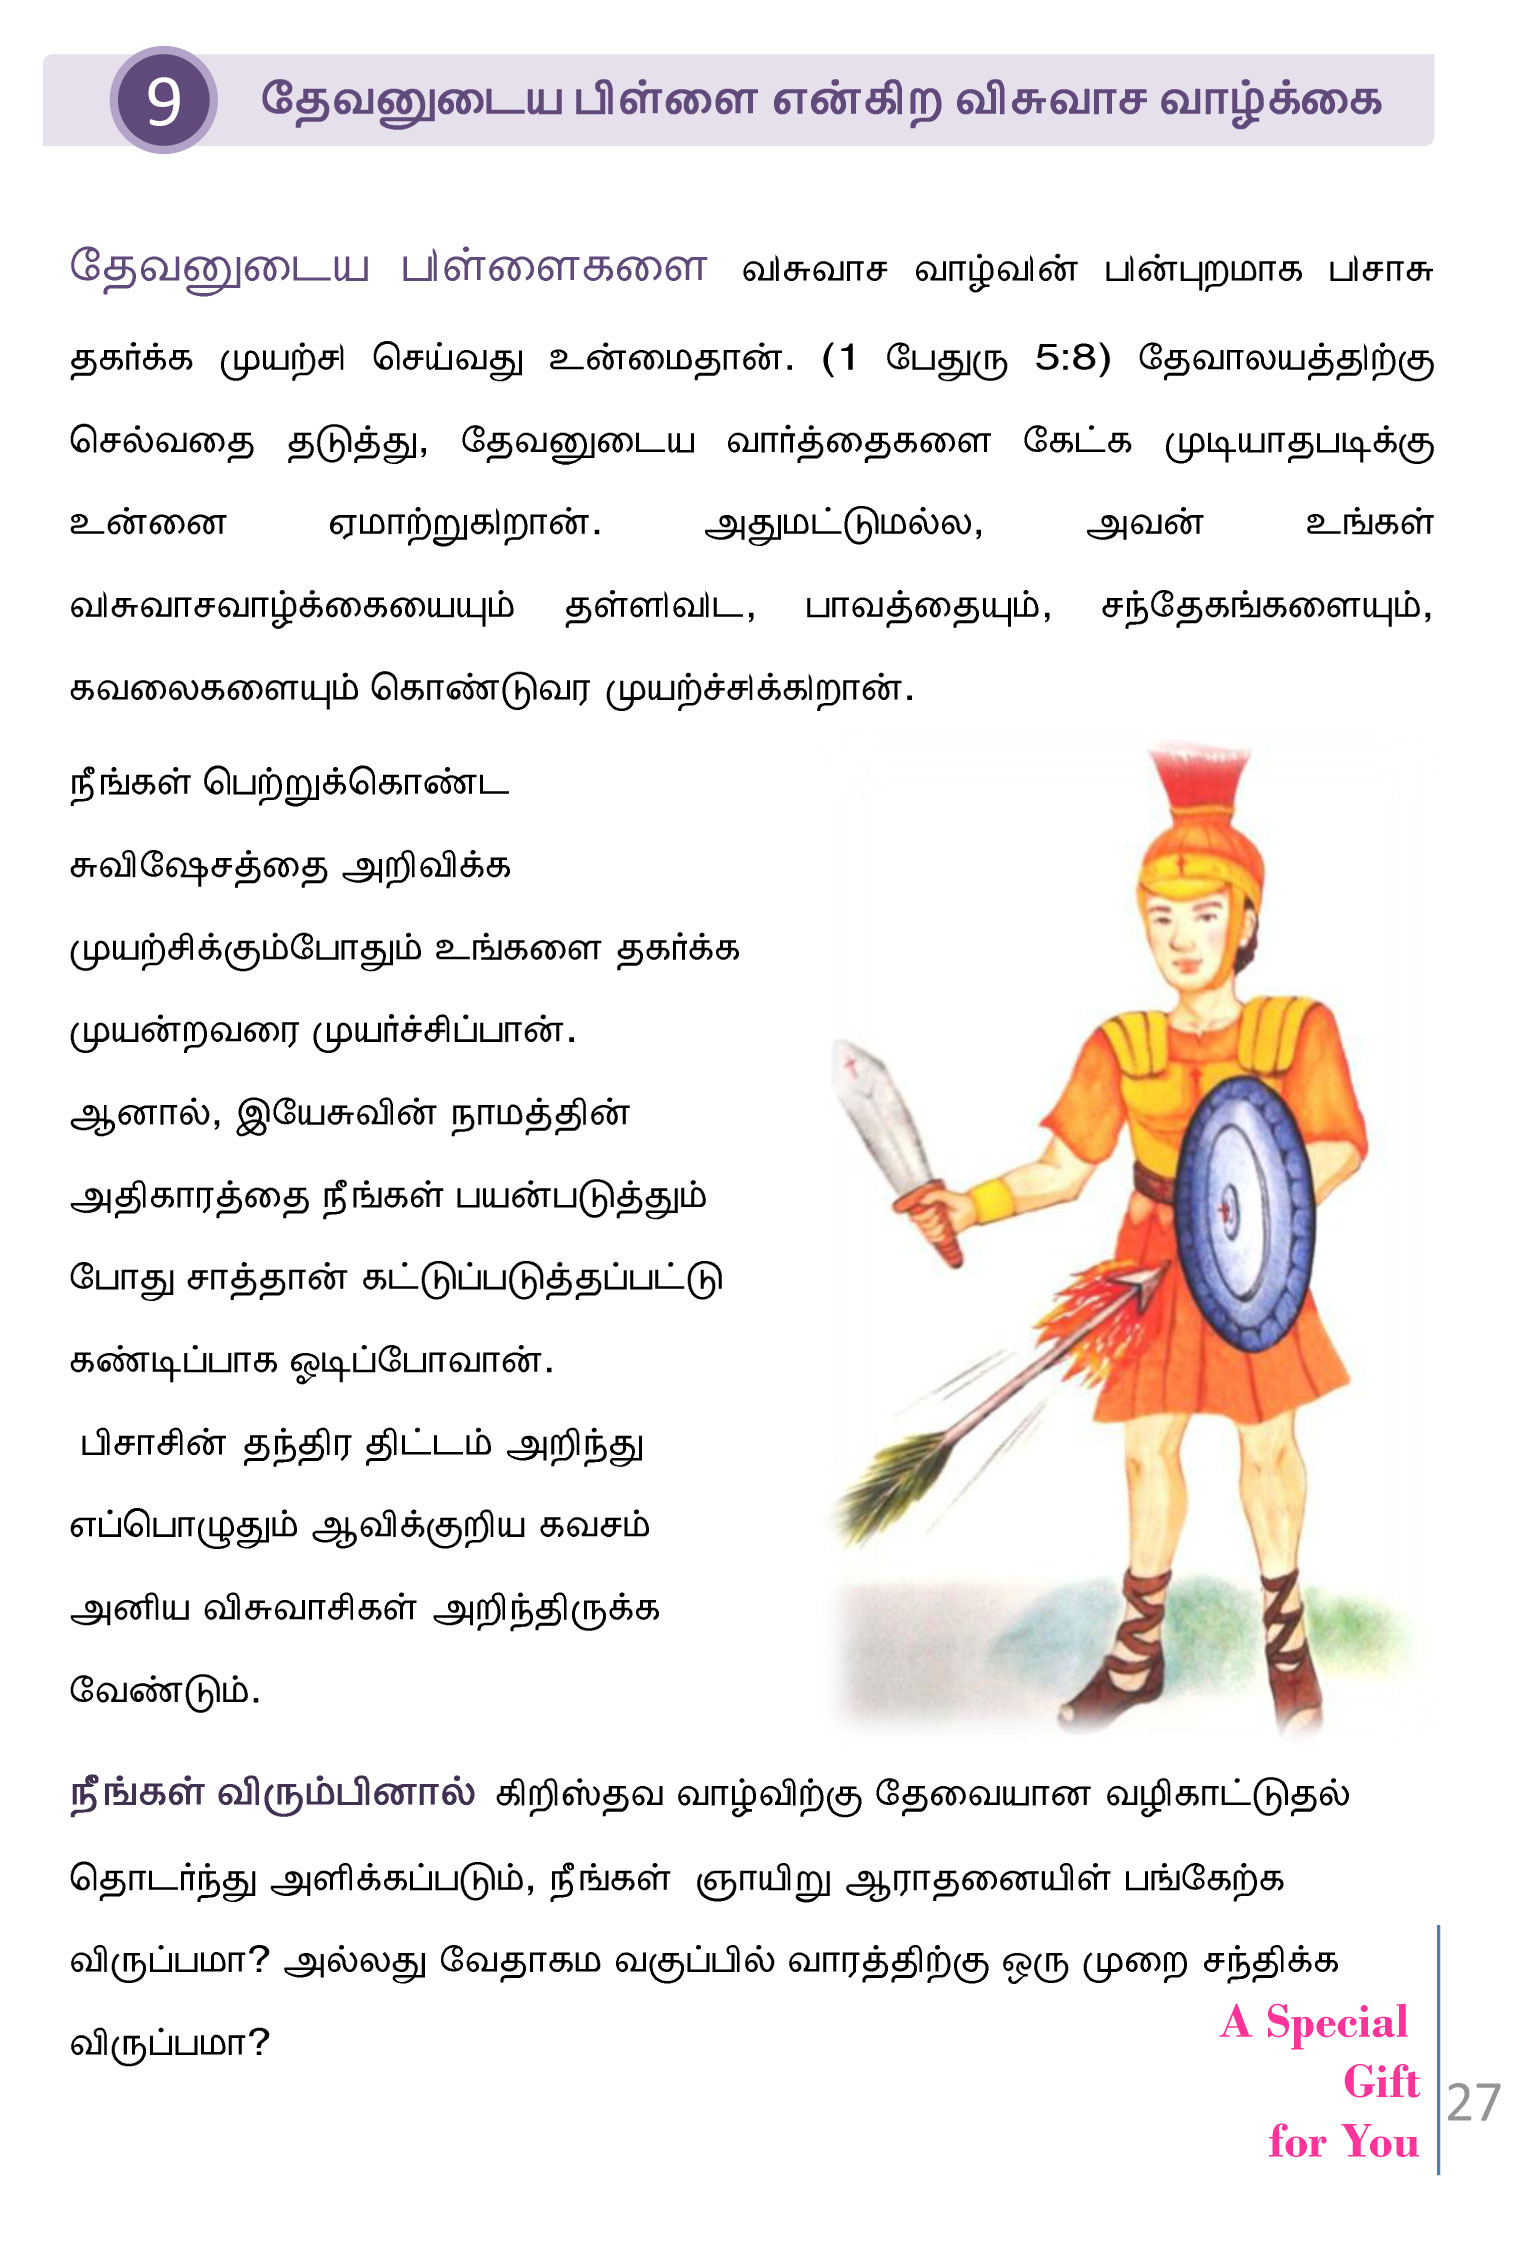 Tamil-Evangelism-Book-Pdf-3-27.jpg